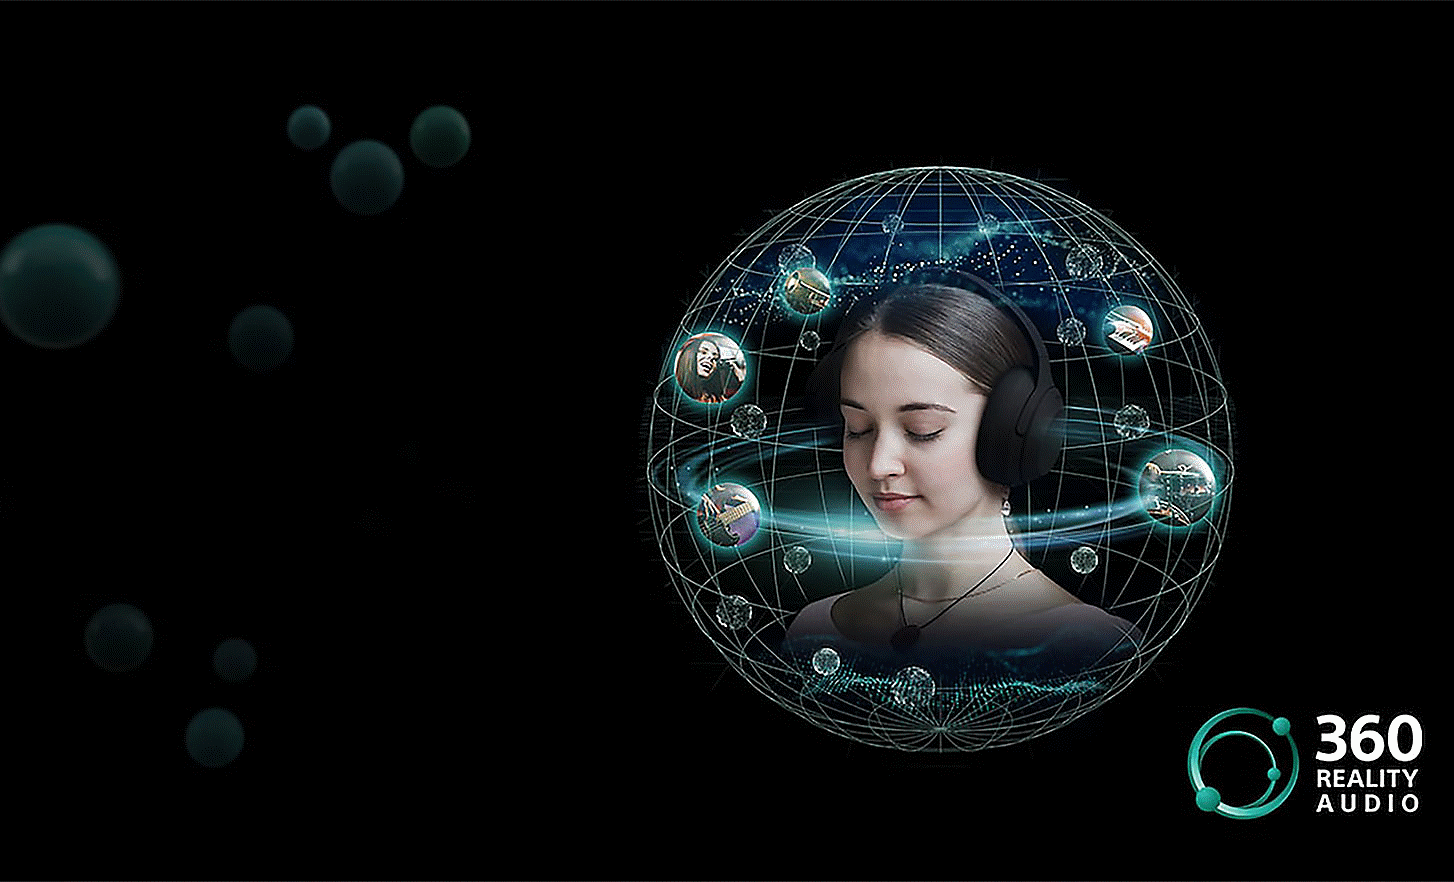 Hình ảnh một người đeo tai nghe với xung quanh là các bong bóng âm thanh trong lưới tròn và logo 360 Reality Audio bên phải